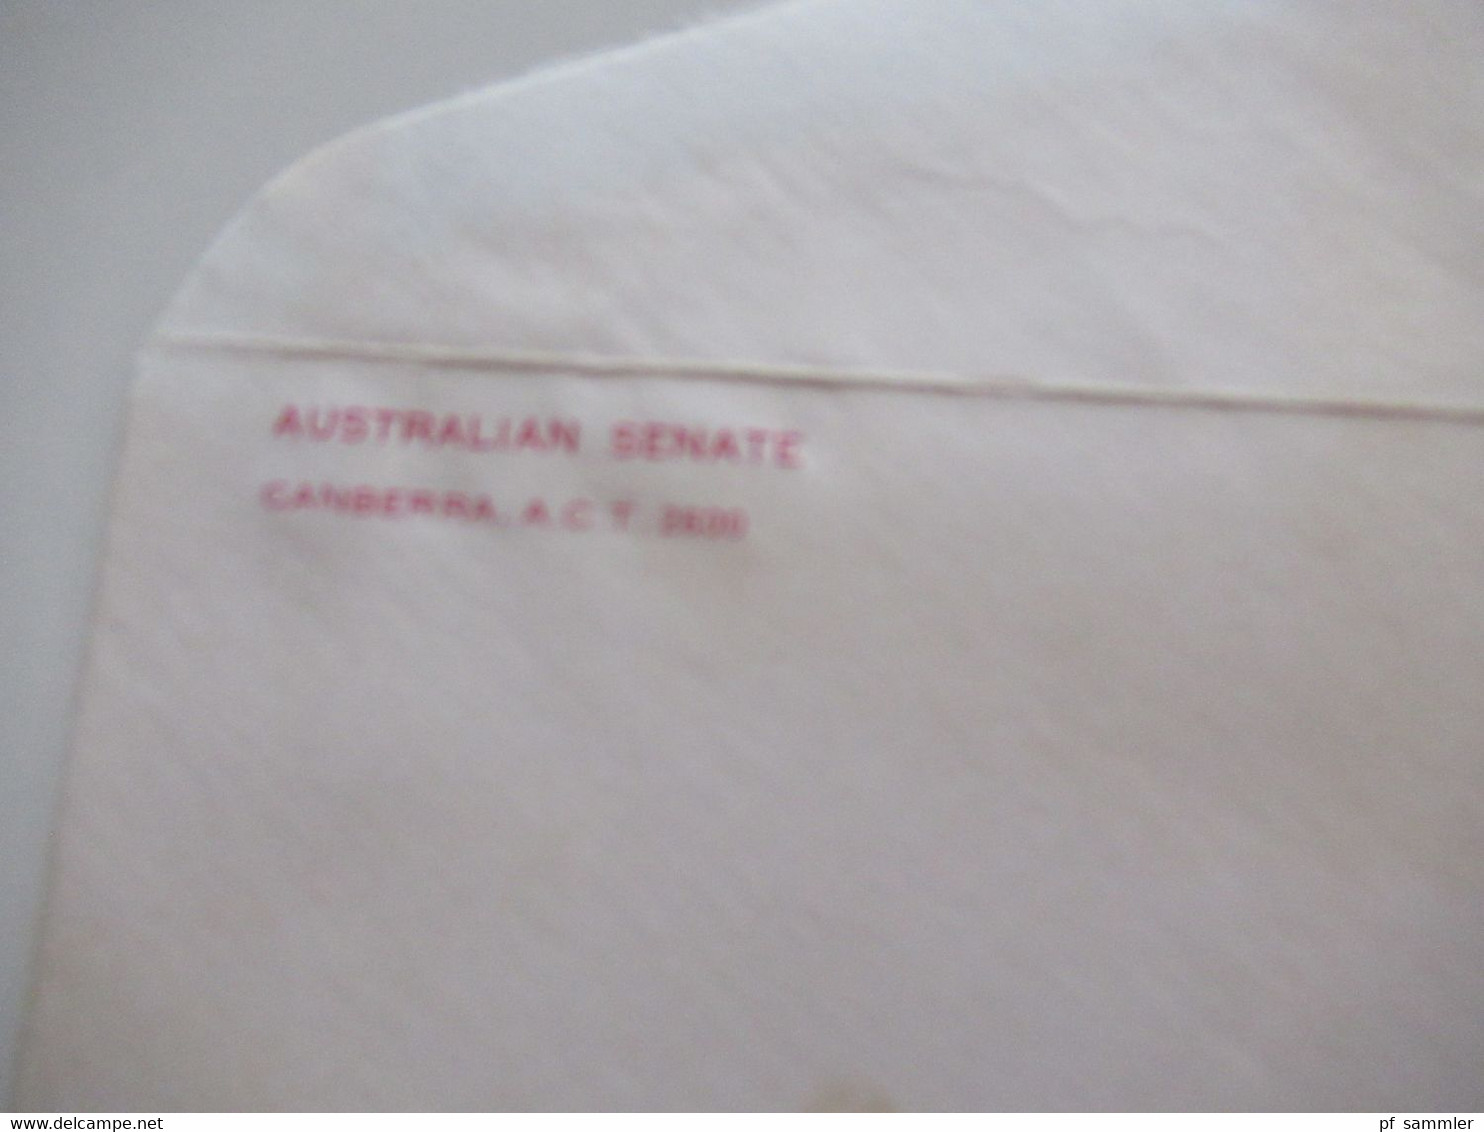 1980 Umschlag Australian Senate (Regierung) Mit Inhalt U. Original Unterschrift K.O. Bradshaw Acting Clerk Of The Senate - Lettres & Documents